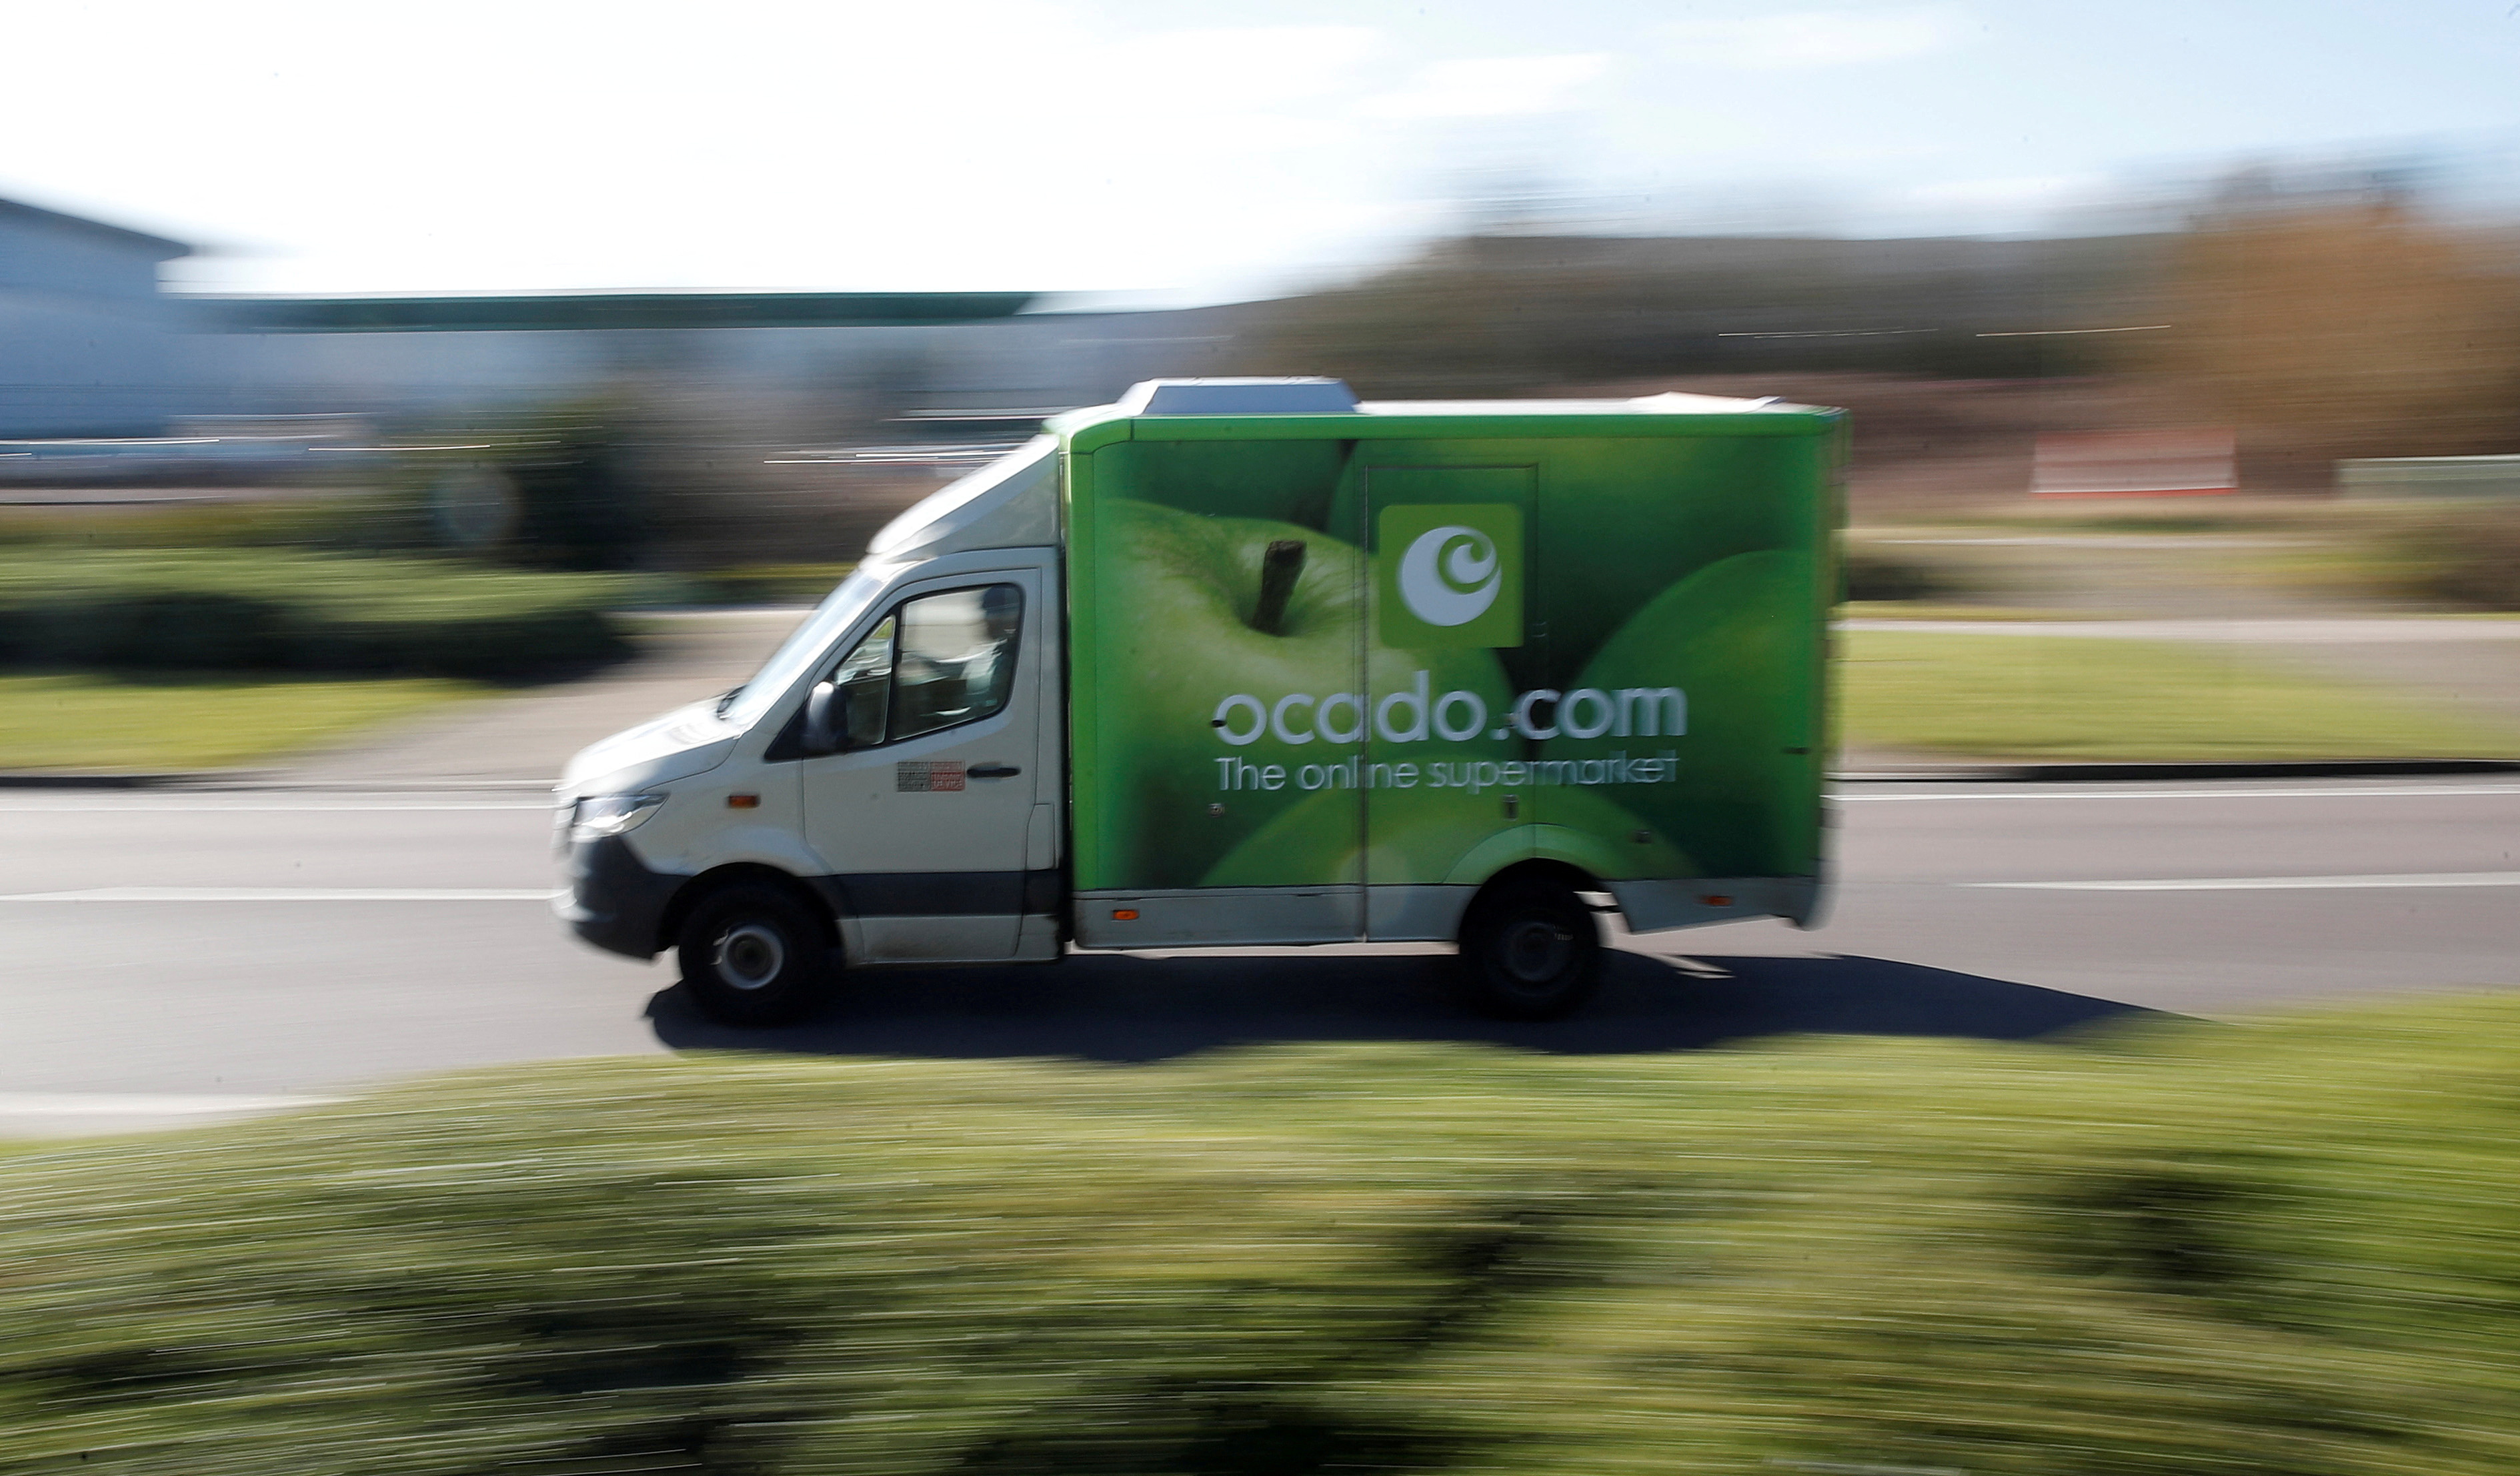 An Ocado delivery van seen driving in Hatfield